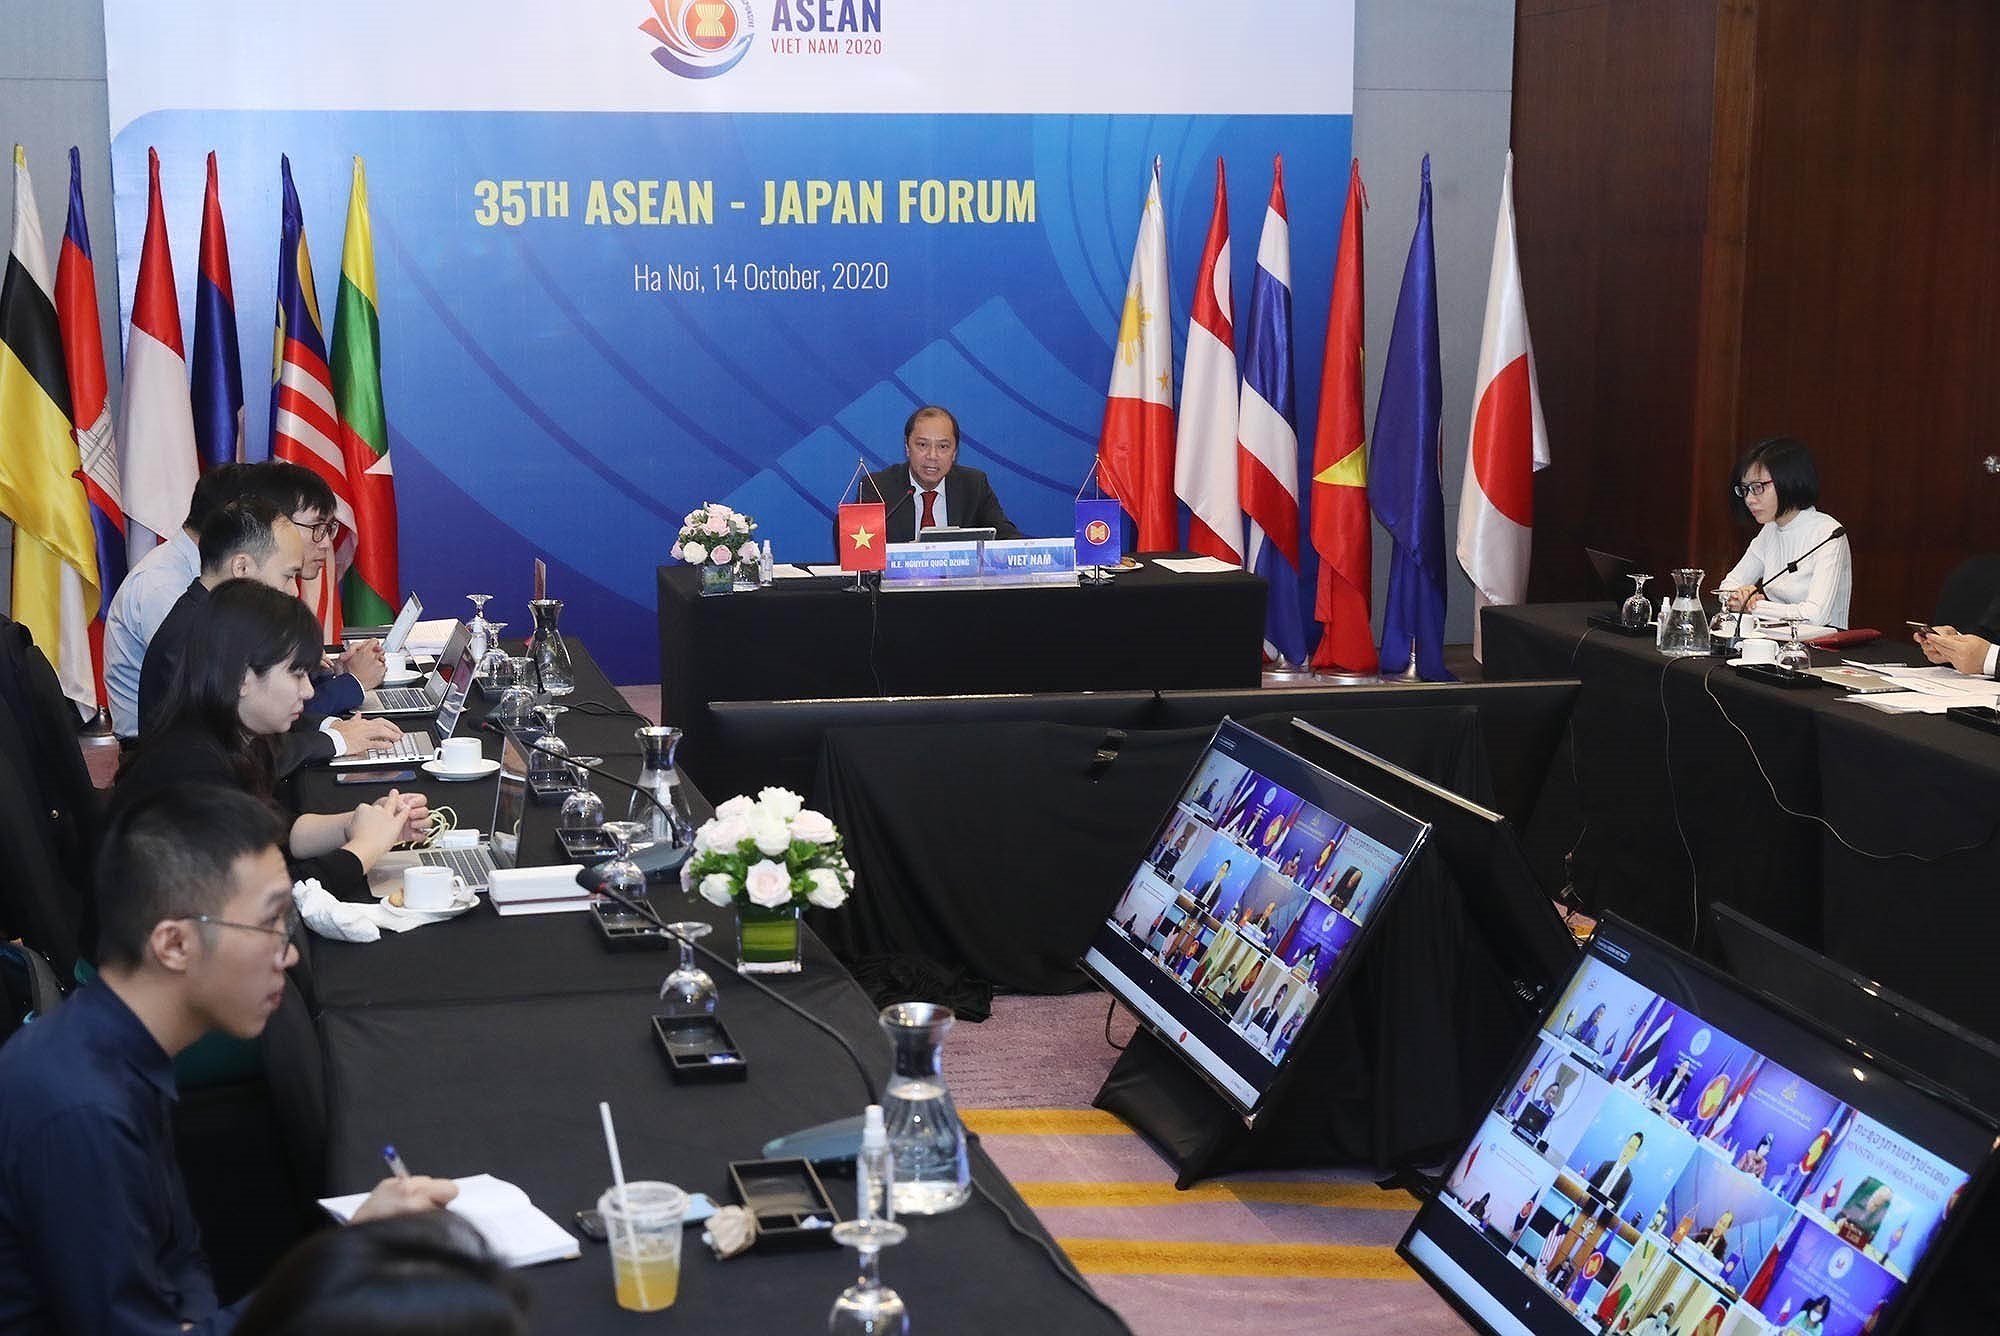 La position du Vietnam a la presidence tournante de l'ASEAN 2020 s'affirme de plus en plus hinh anh 9